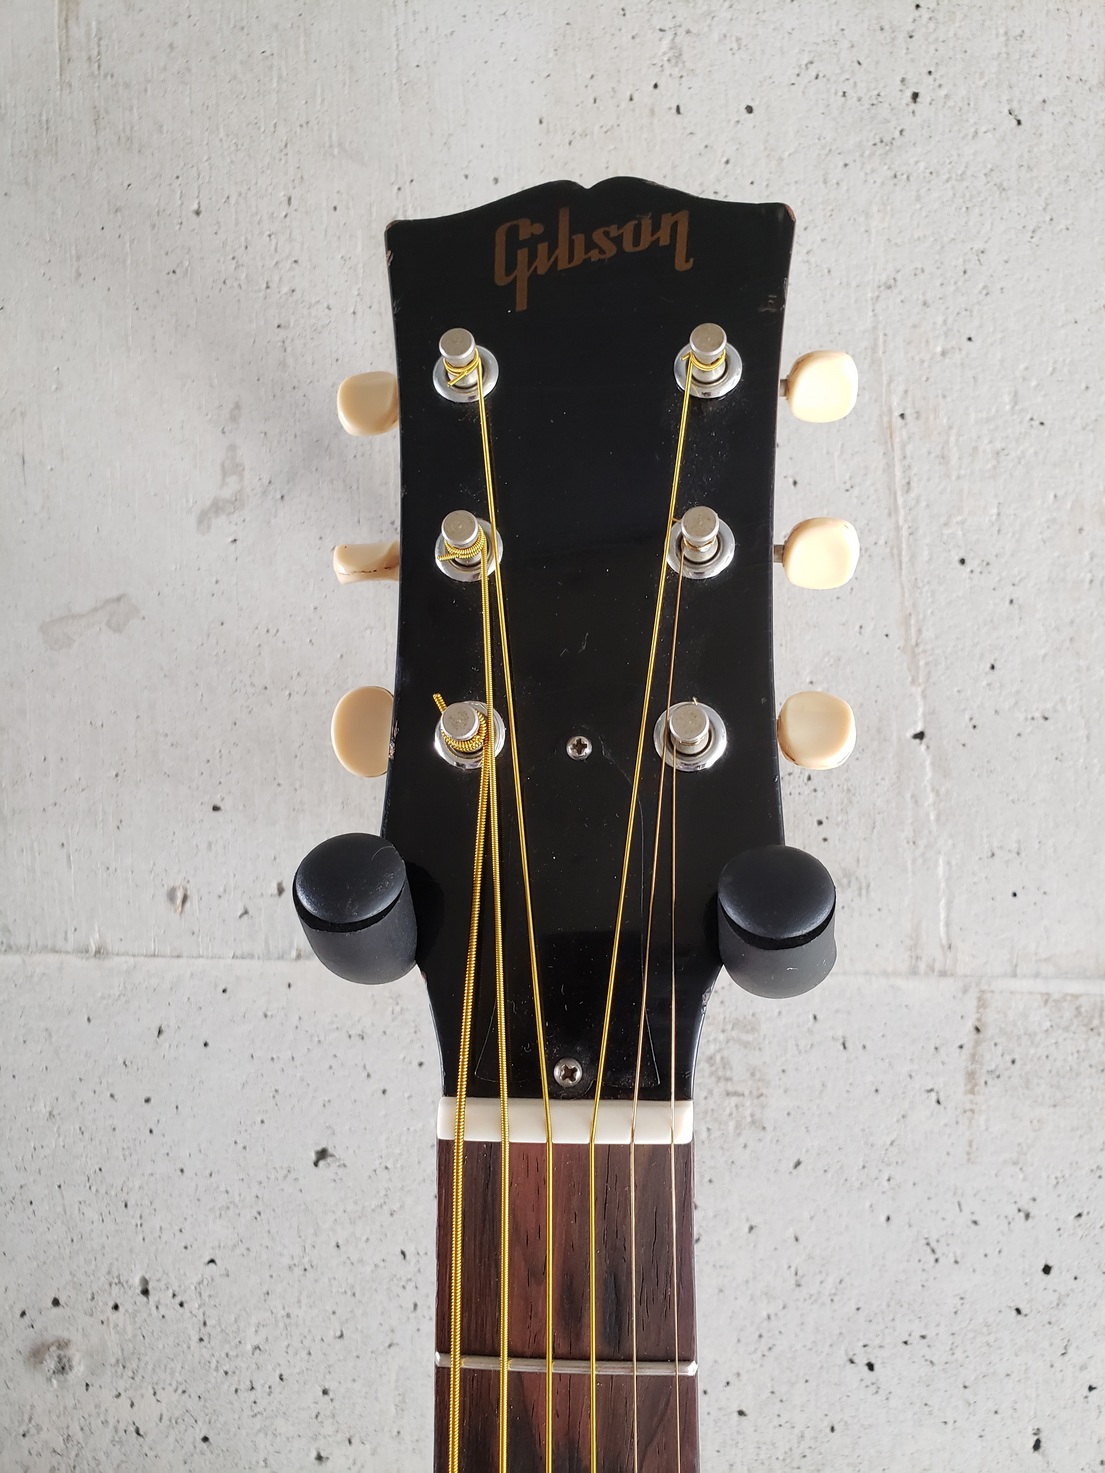 ヤマハパルス米子楽器社オンラインストア / Gibson B-25 1968年製